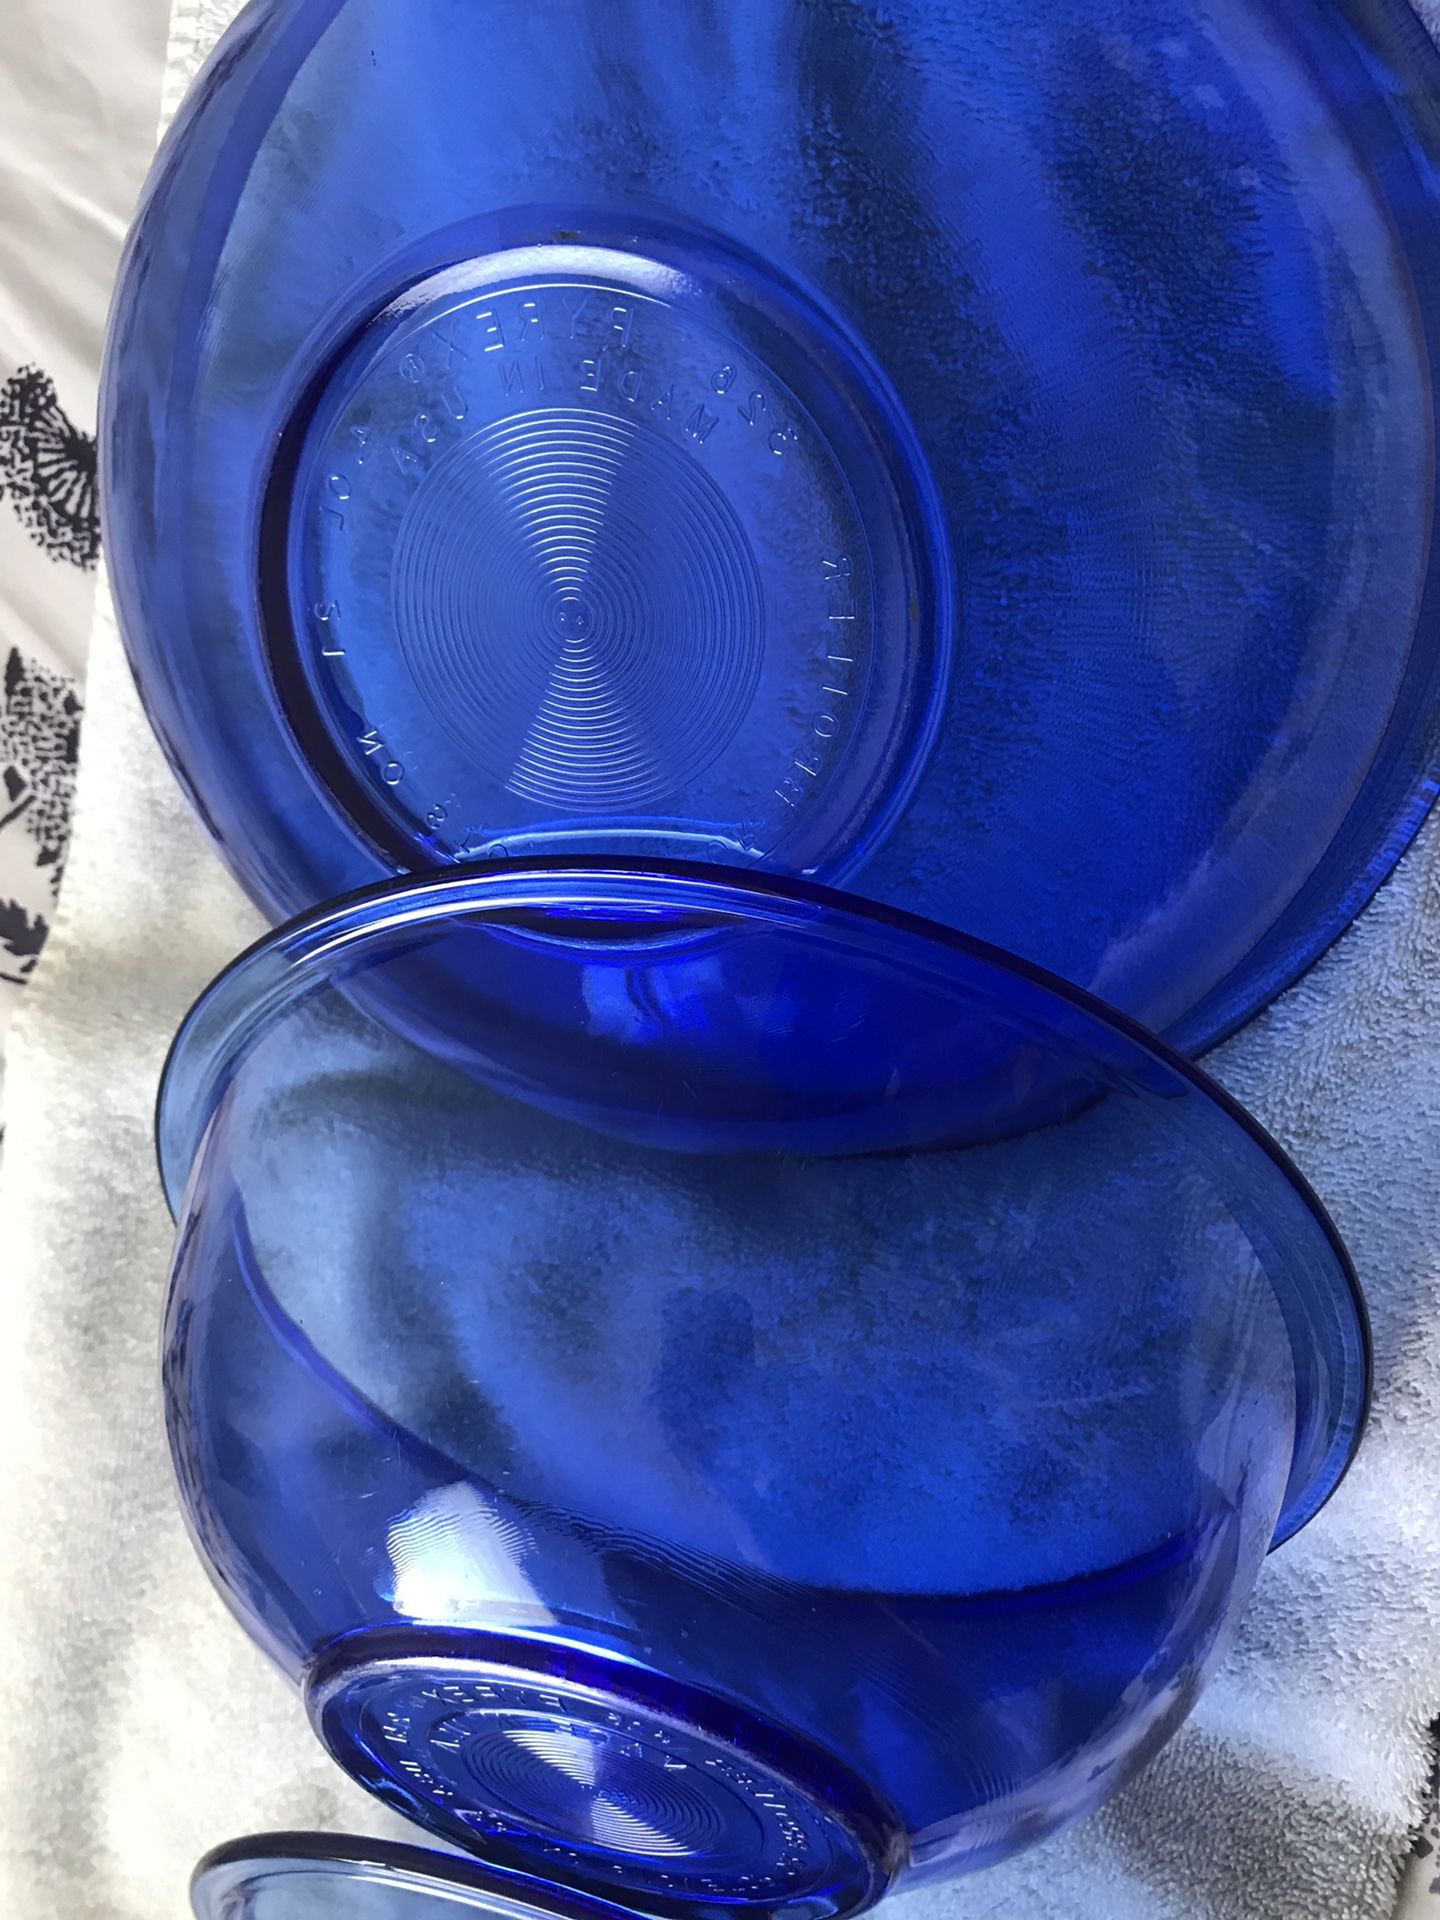 Pyrex Cobalt Blue Mixing Bowl Set